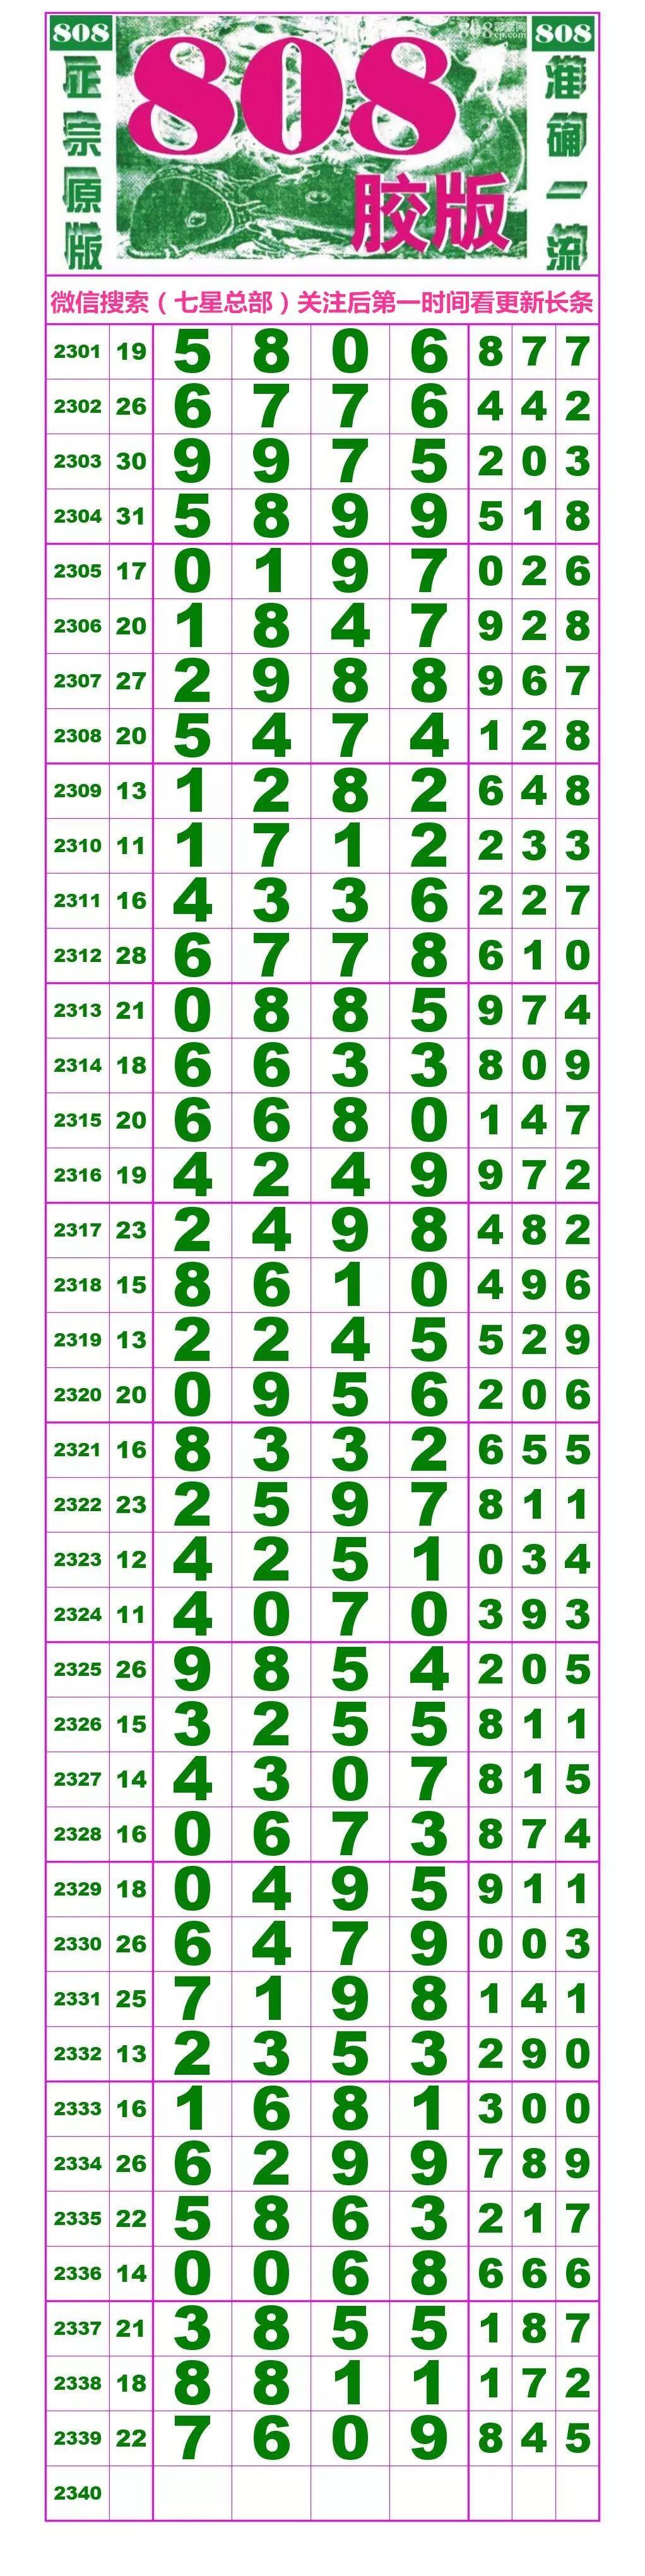 2340期:七星彩(珍惜)解码分析图